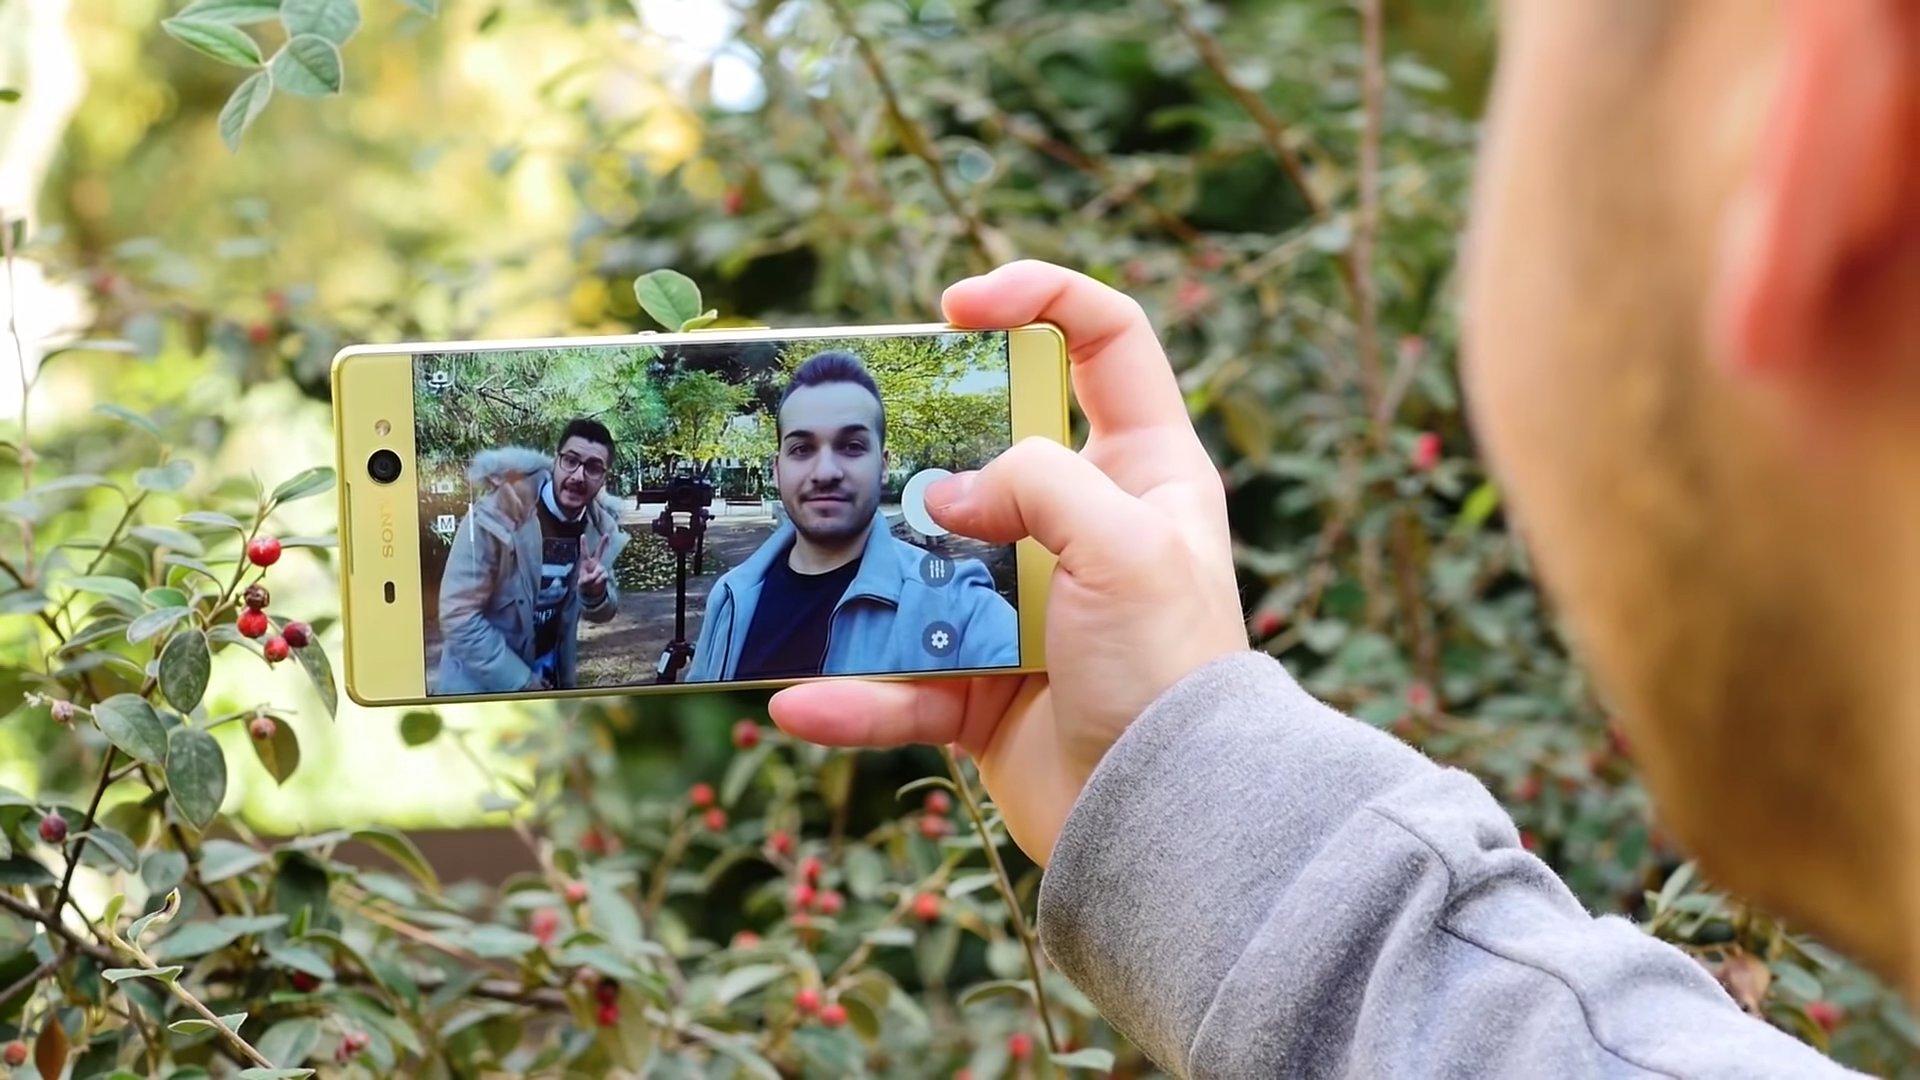 Modo selfies del Xperia XA Ultra